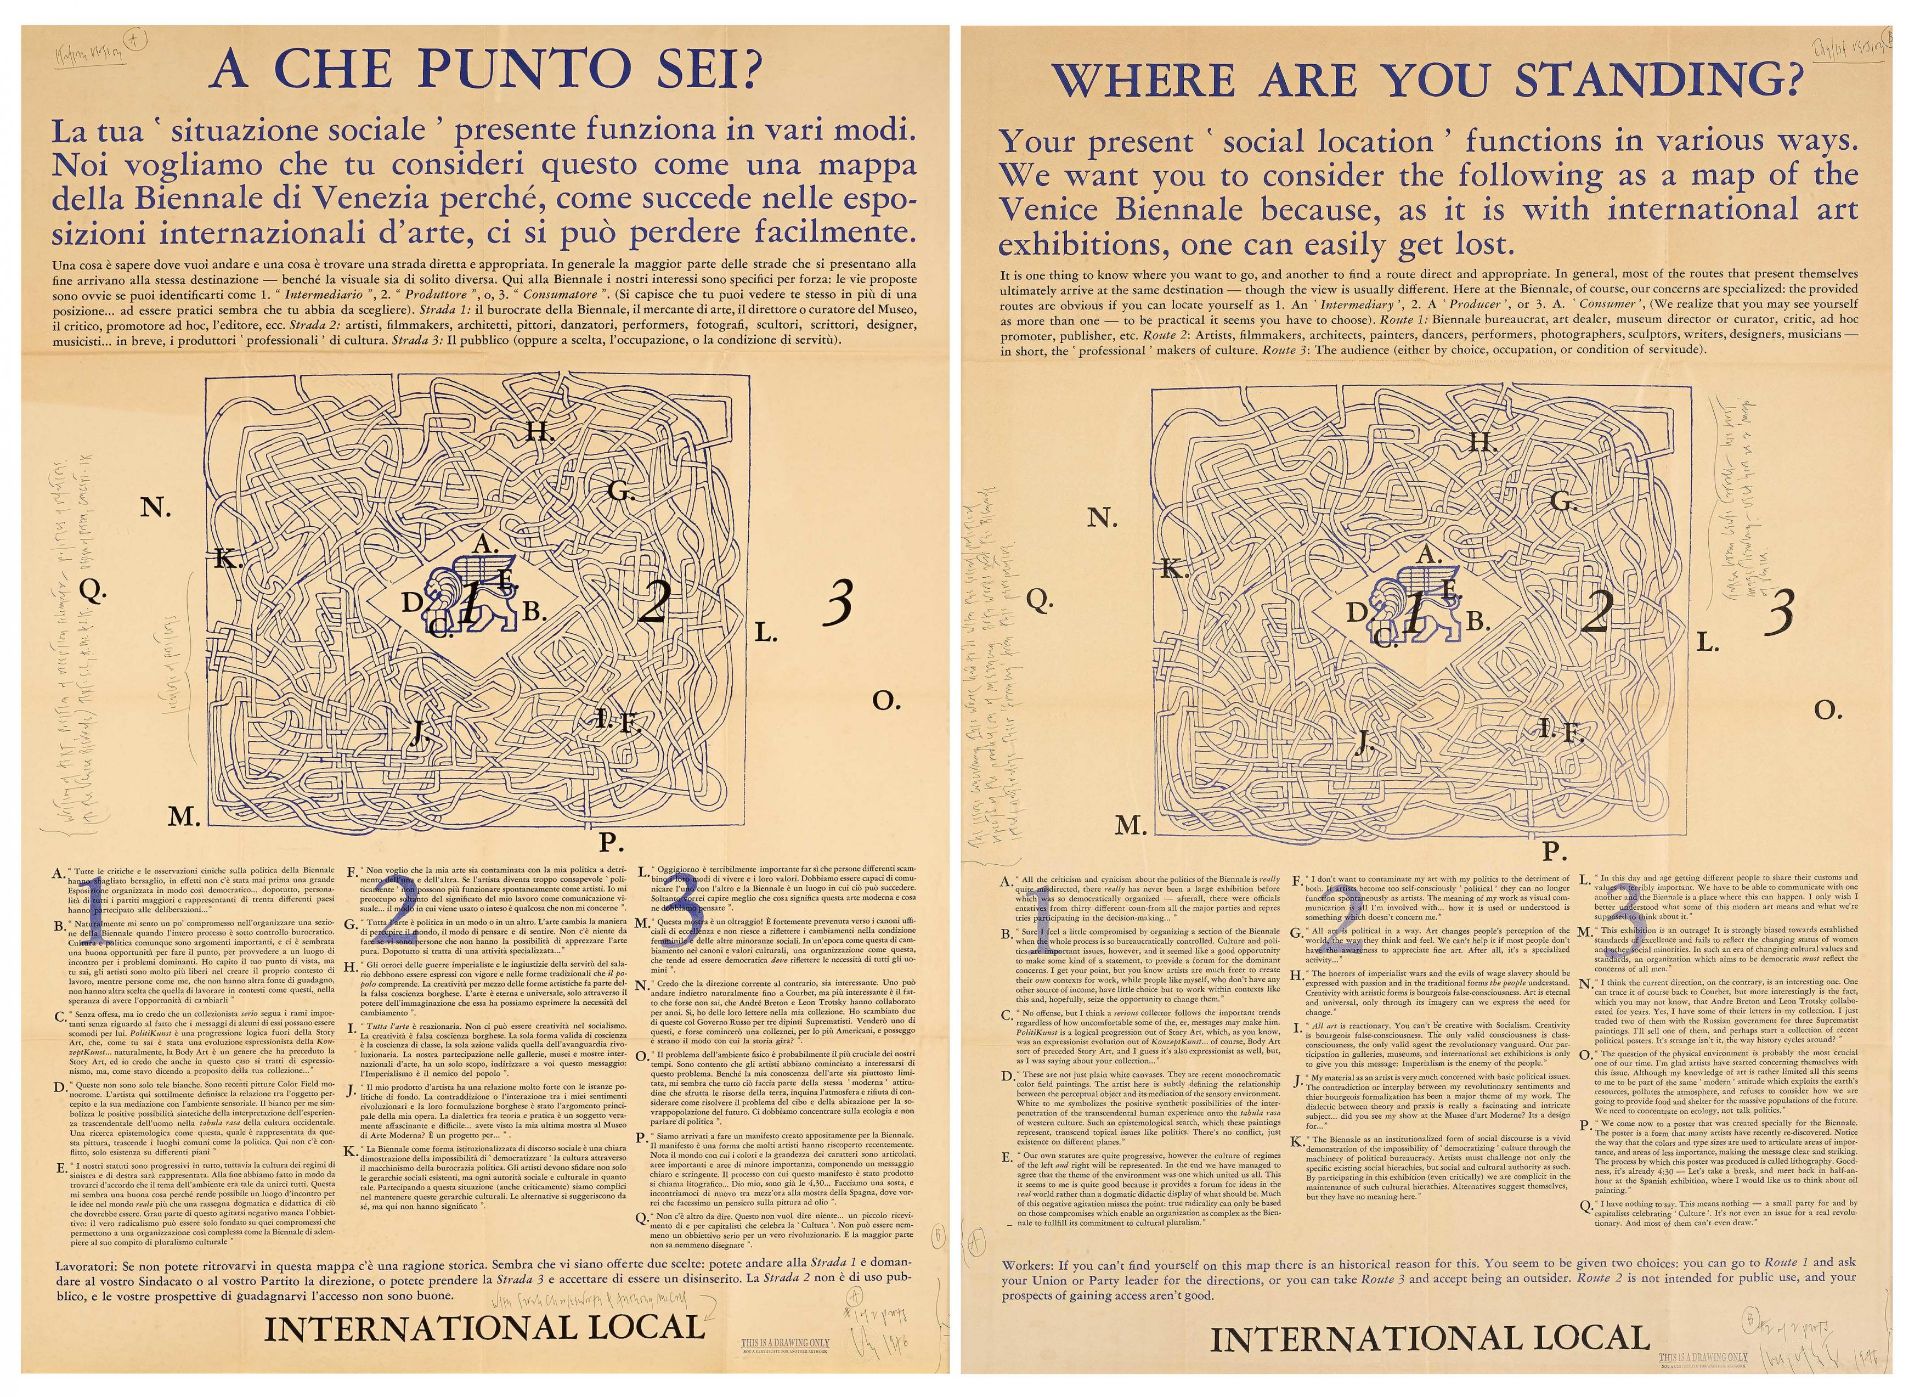 Joseph Kosuth: A que punto sei (Where are you standing?)